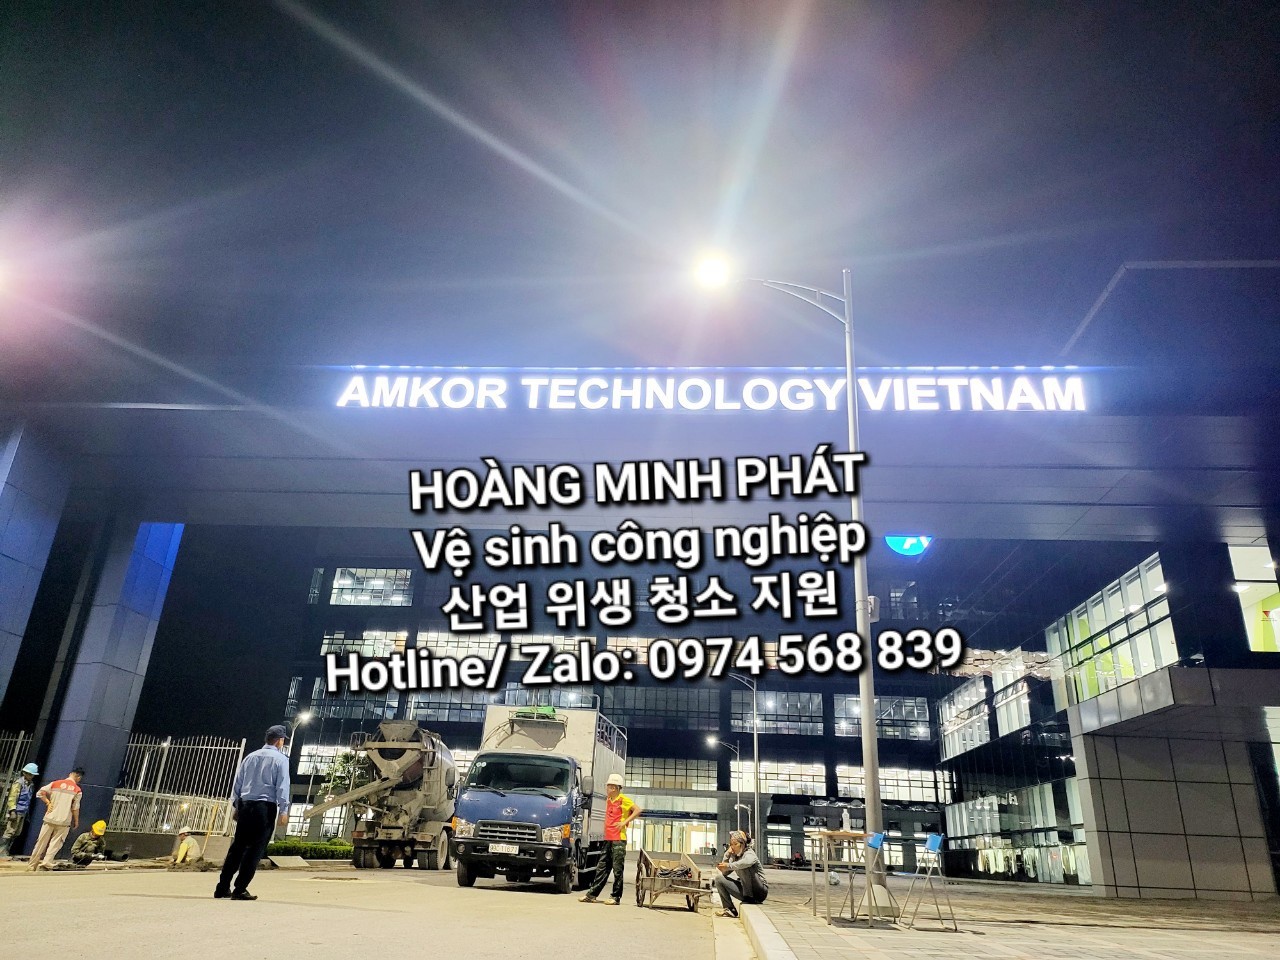 Nhà máy Amkor Technology Việt Nam - Vệ Sinh Công Nghiệp Hoàng Minh Phát (HMP Cleaning Service) -  도우미 & 청소 서비스